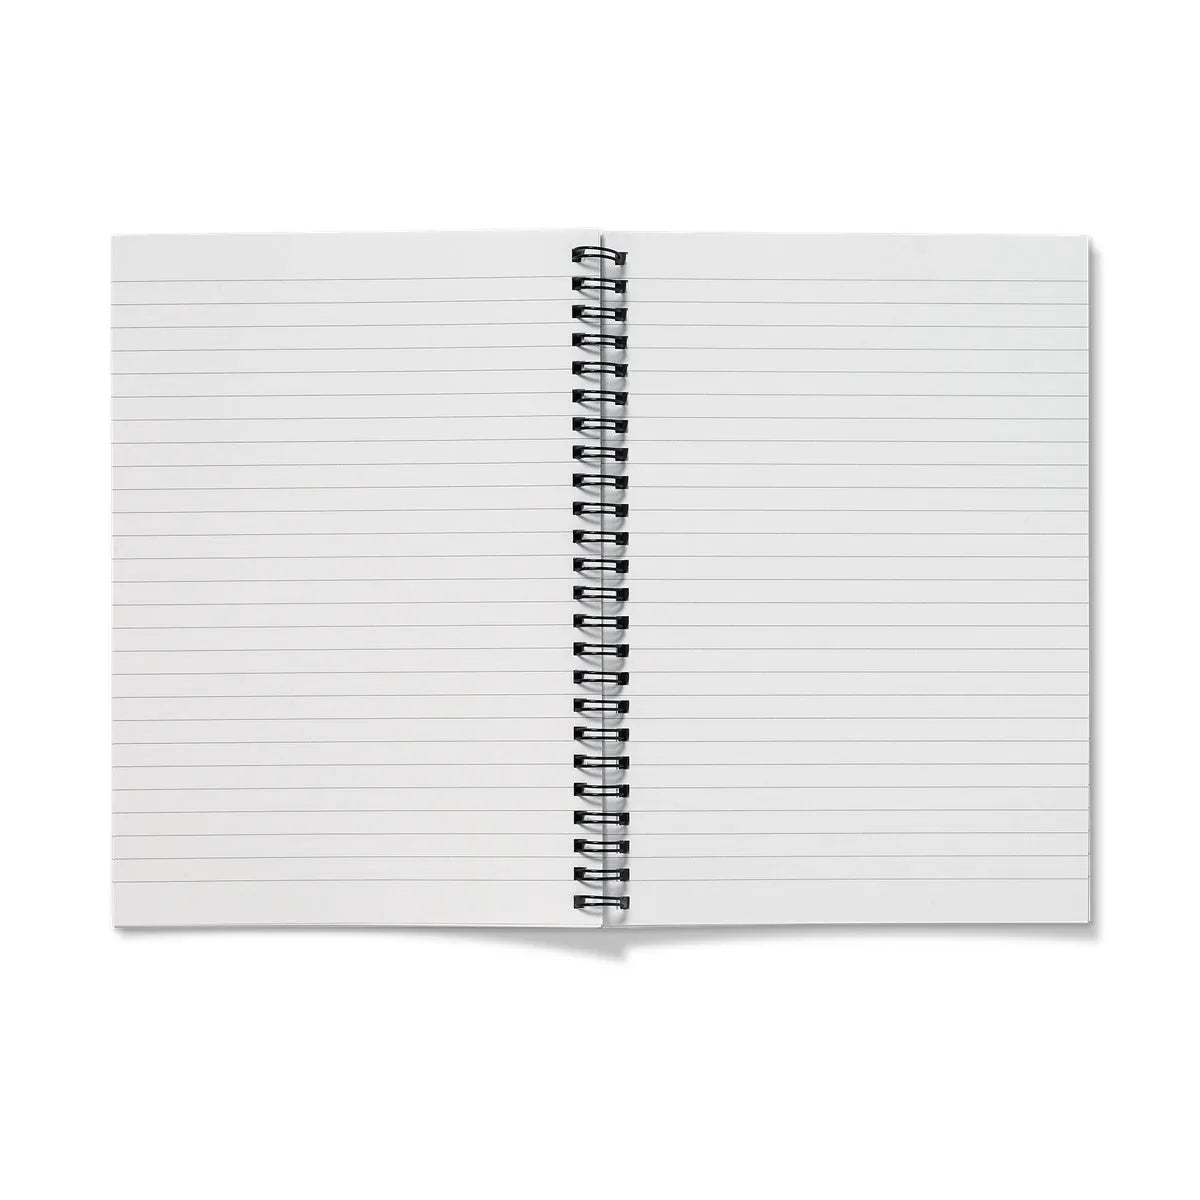 Brickfields Notebook - Notebooks & Notepads - Aesthetic Art